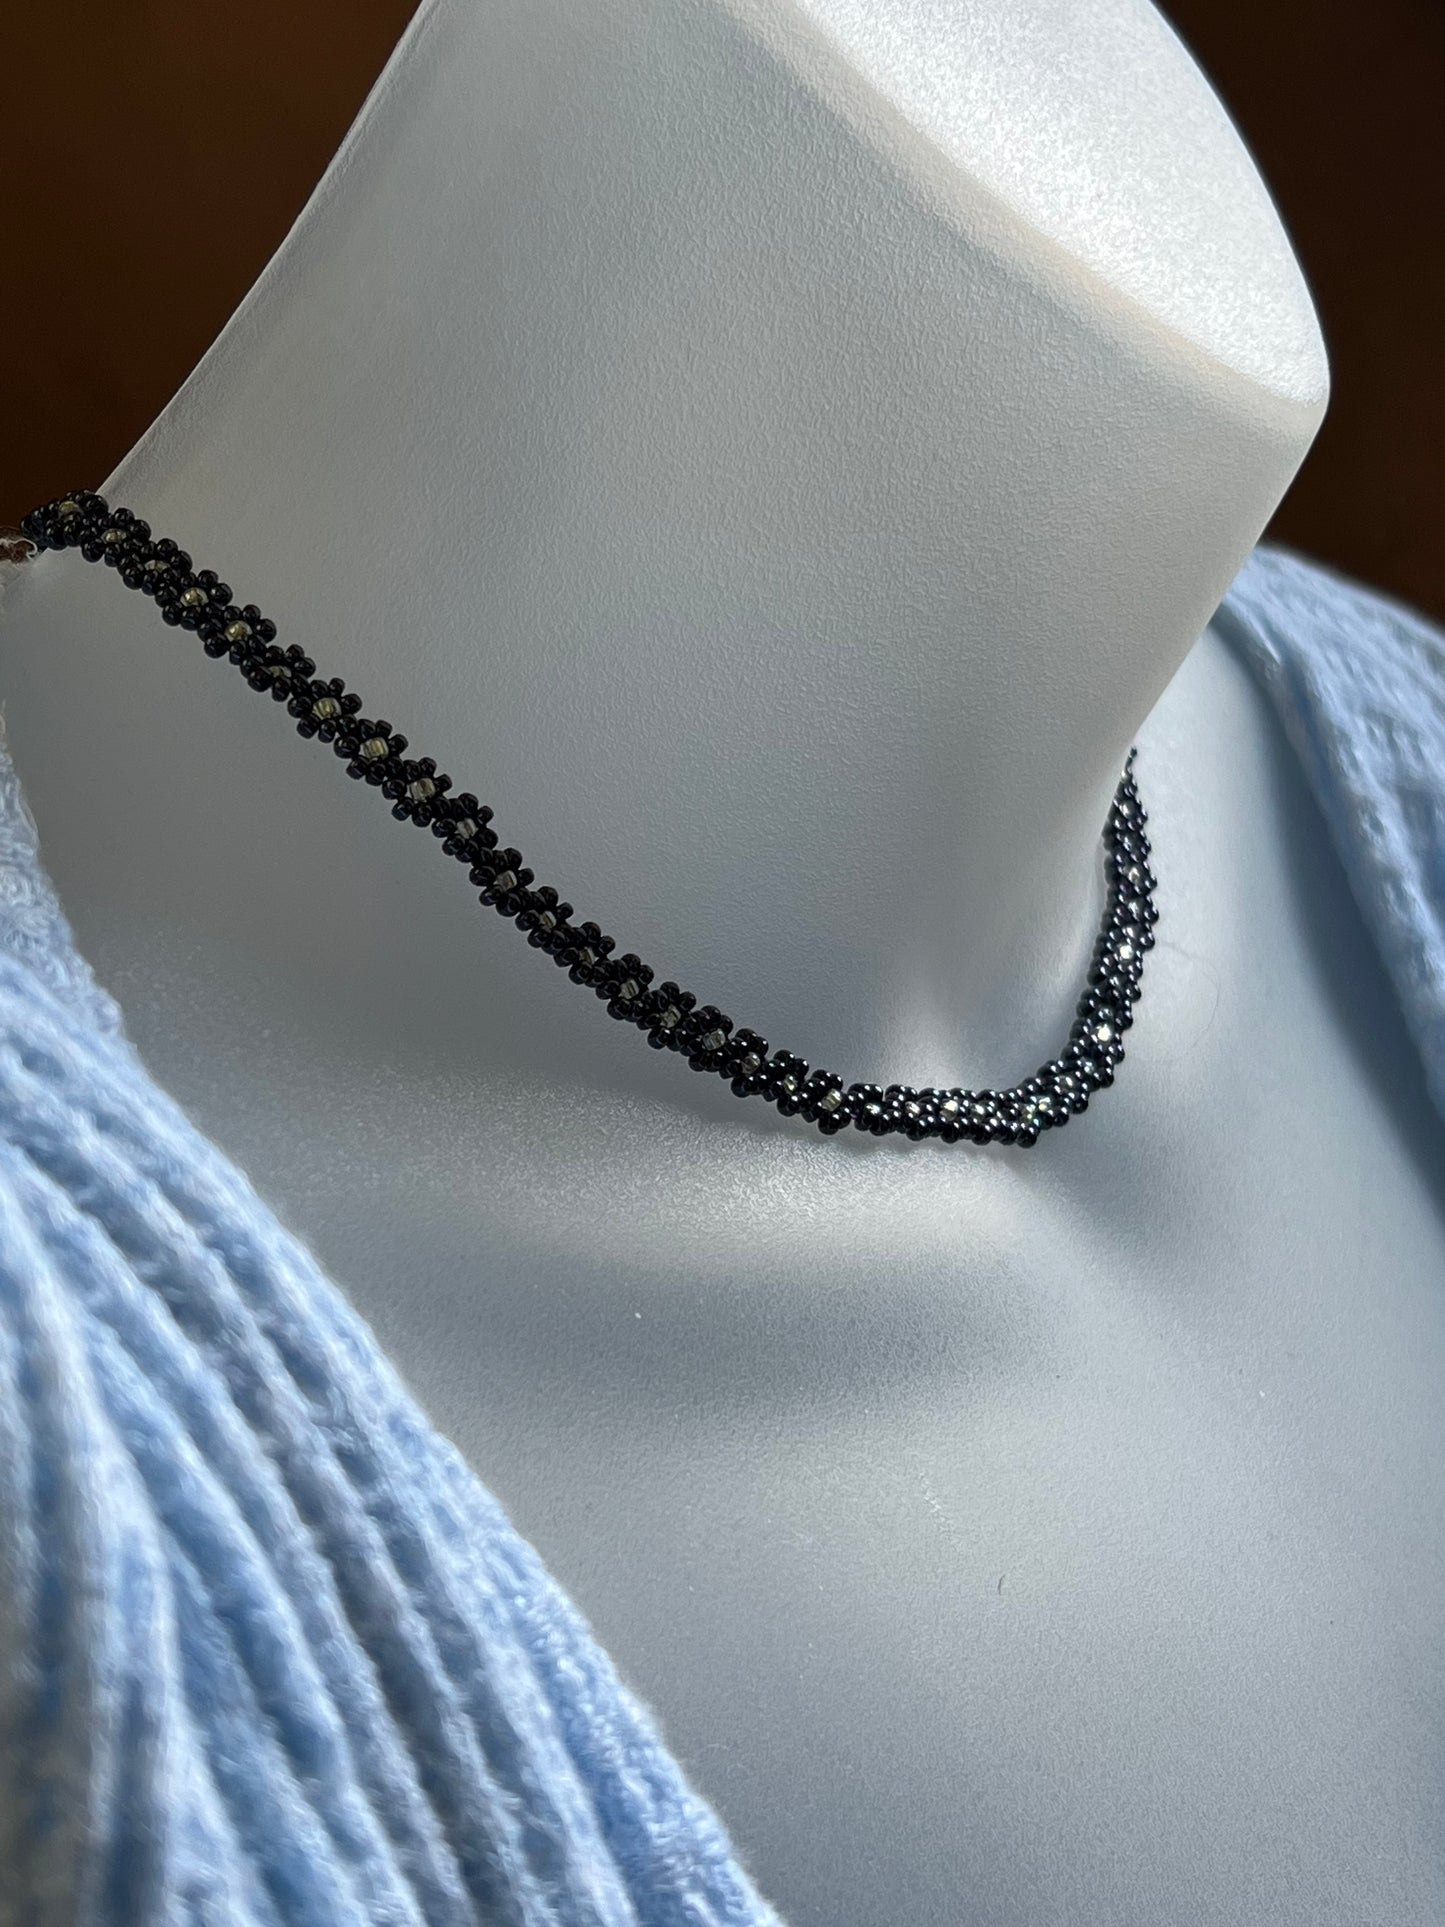 Midnight flower chain necklace